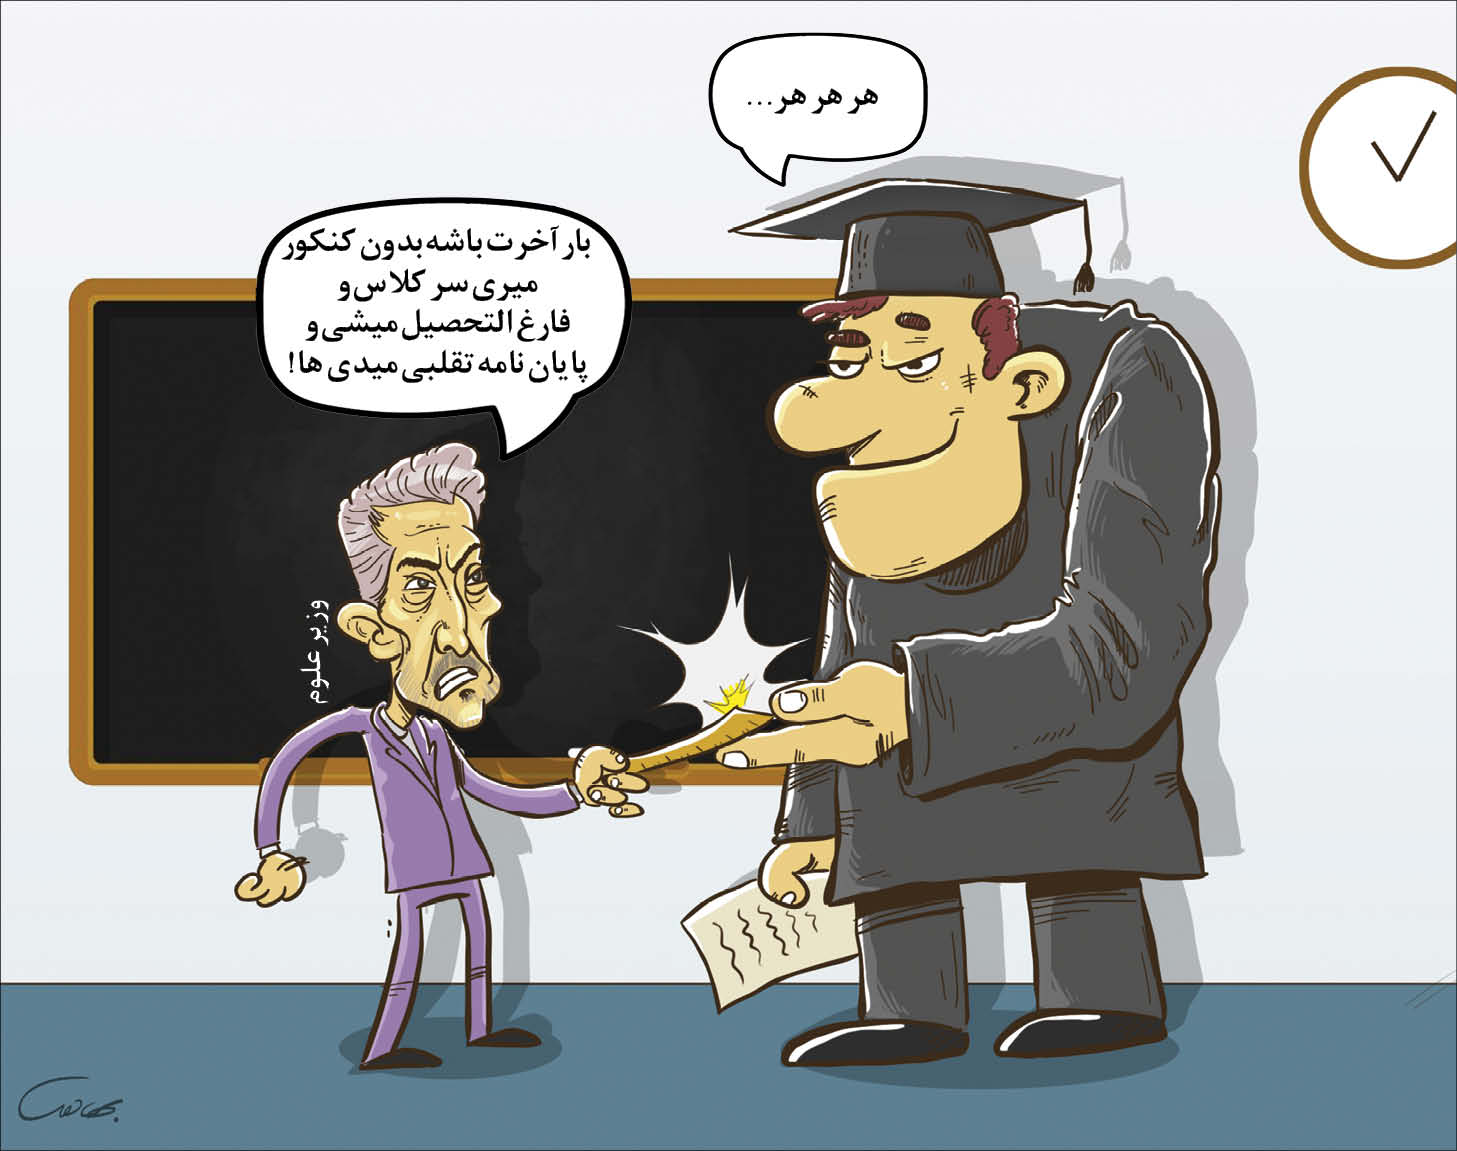 کارتونیست : محمد بهادری